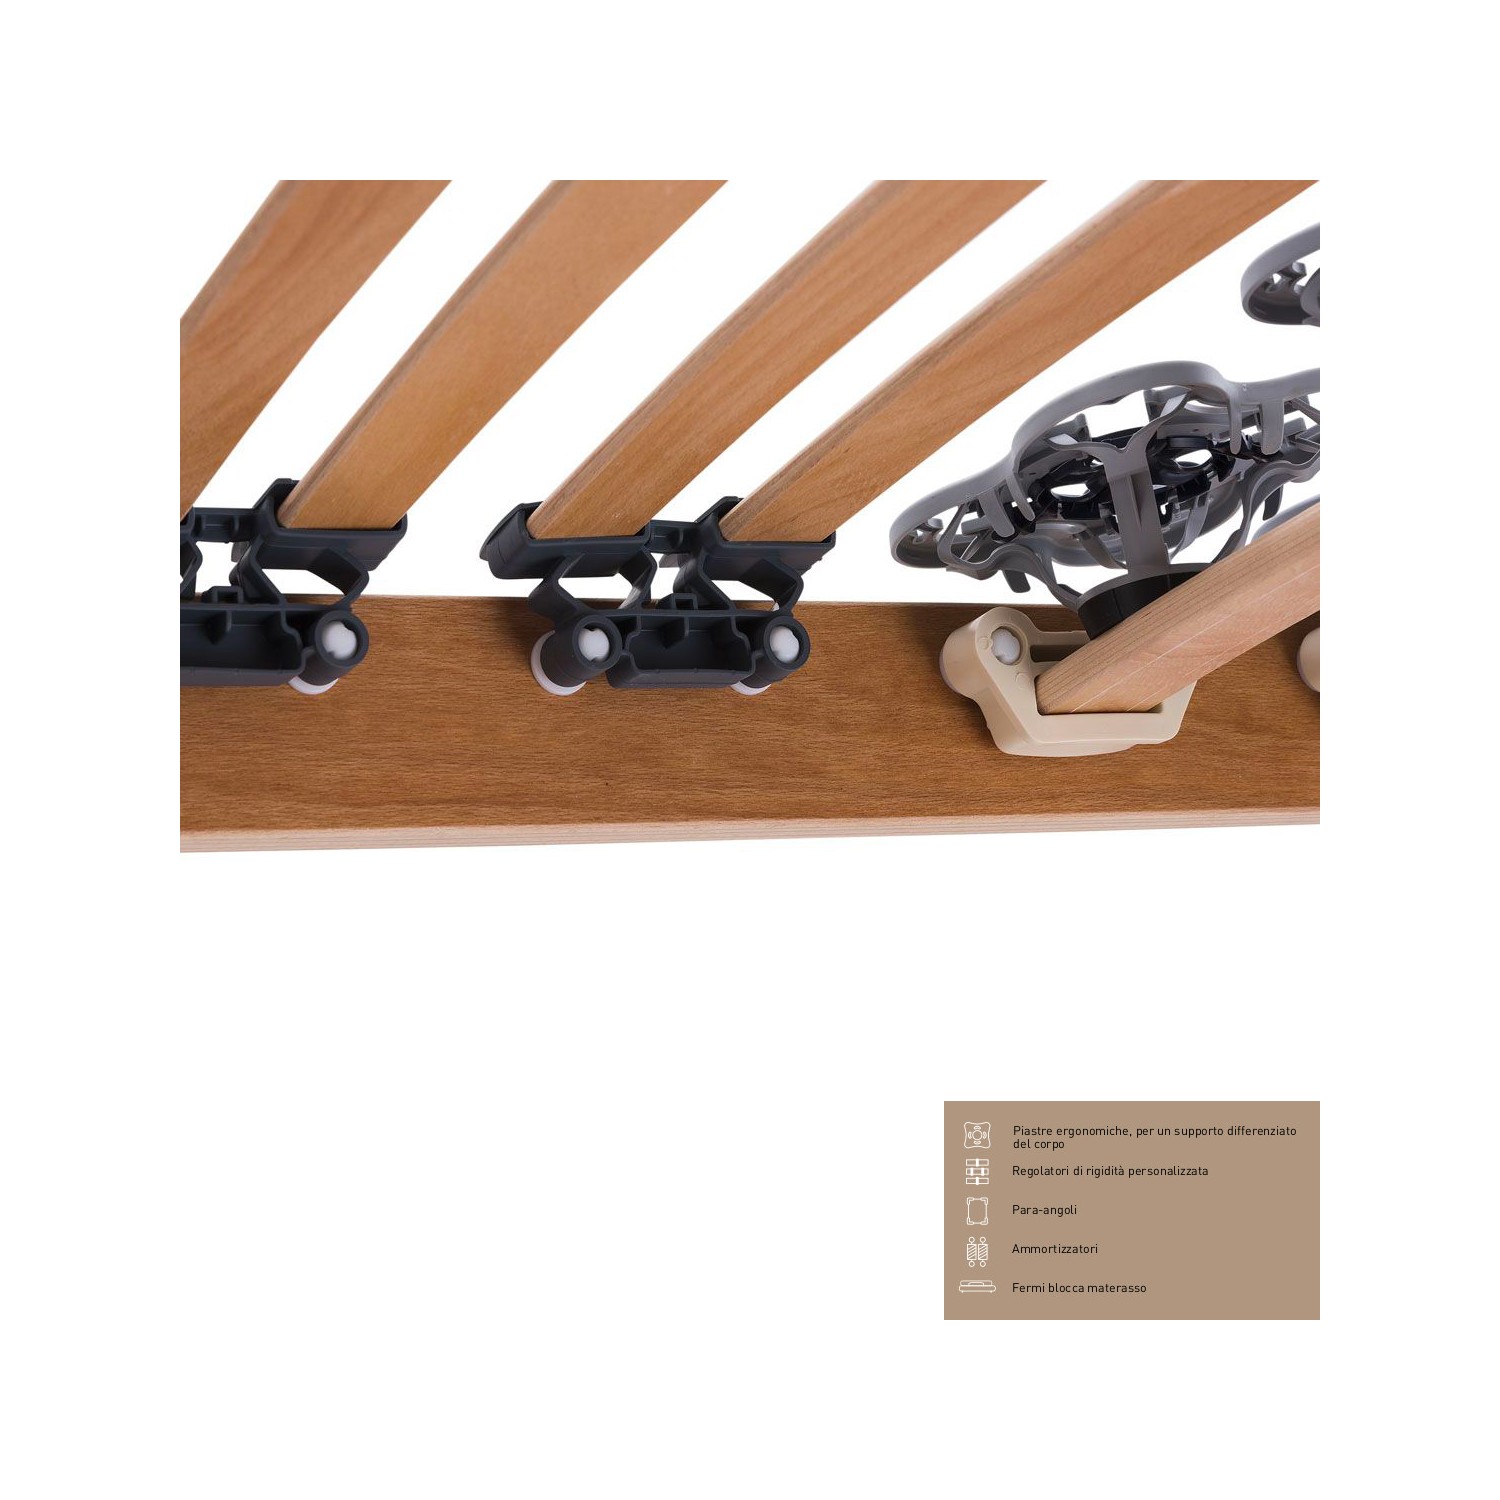 Rete Magniflex ERGO DUE FISSA cm 165 x 190/195/200 piastre ergonomiche, regolatori di rigidità doghe legno